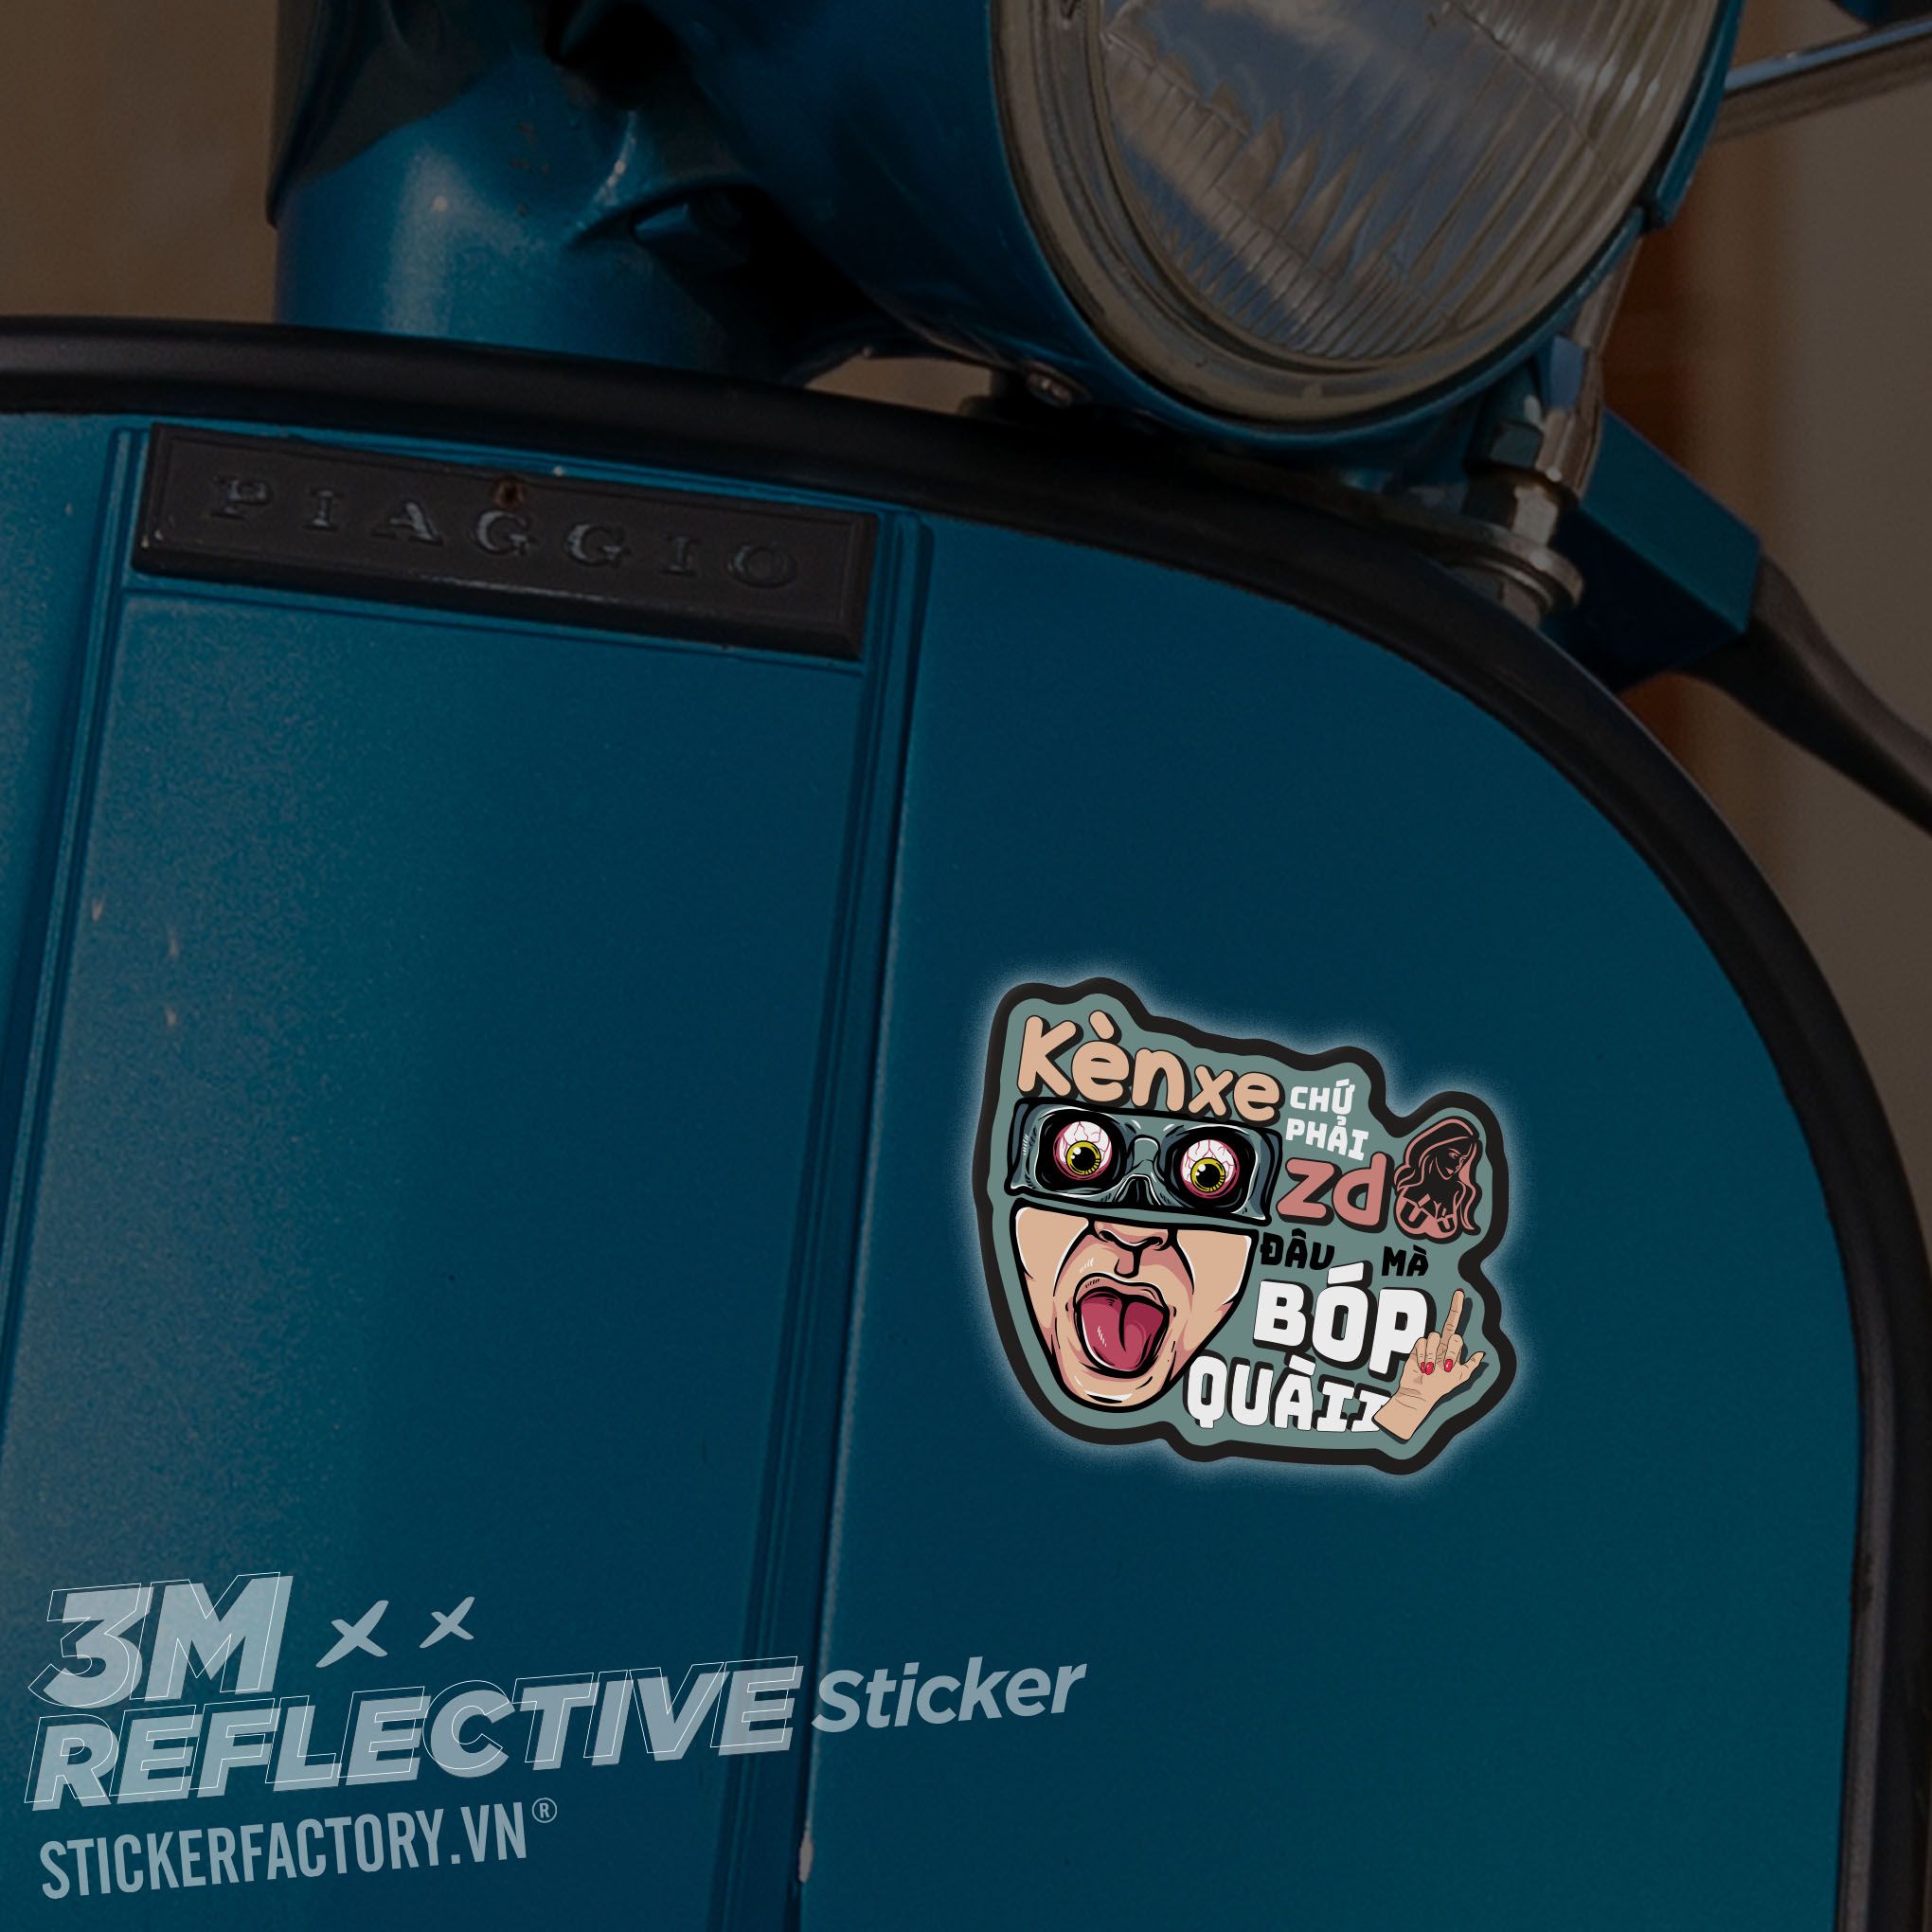 BOPKEN - 3M Reflective Sticker Die-cut